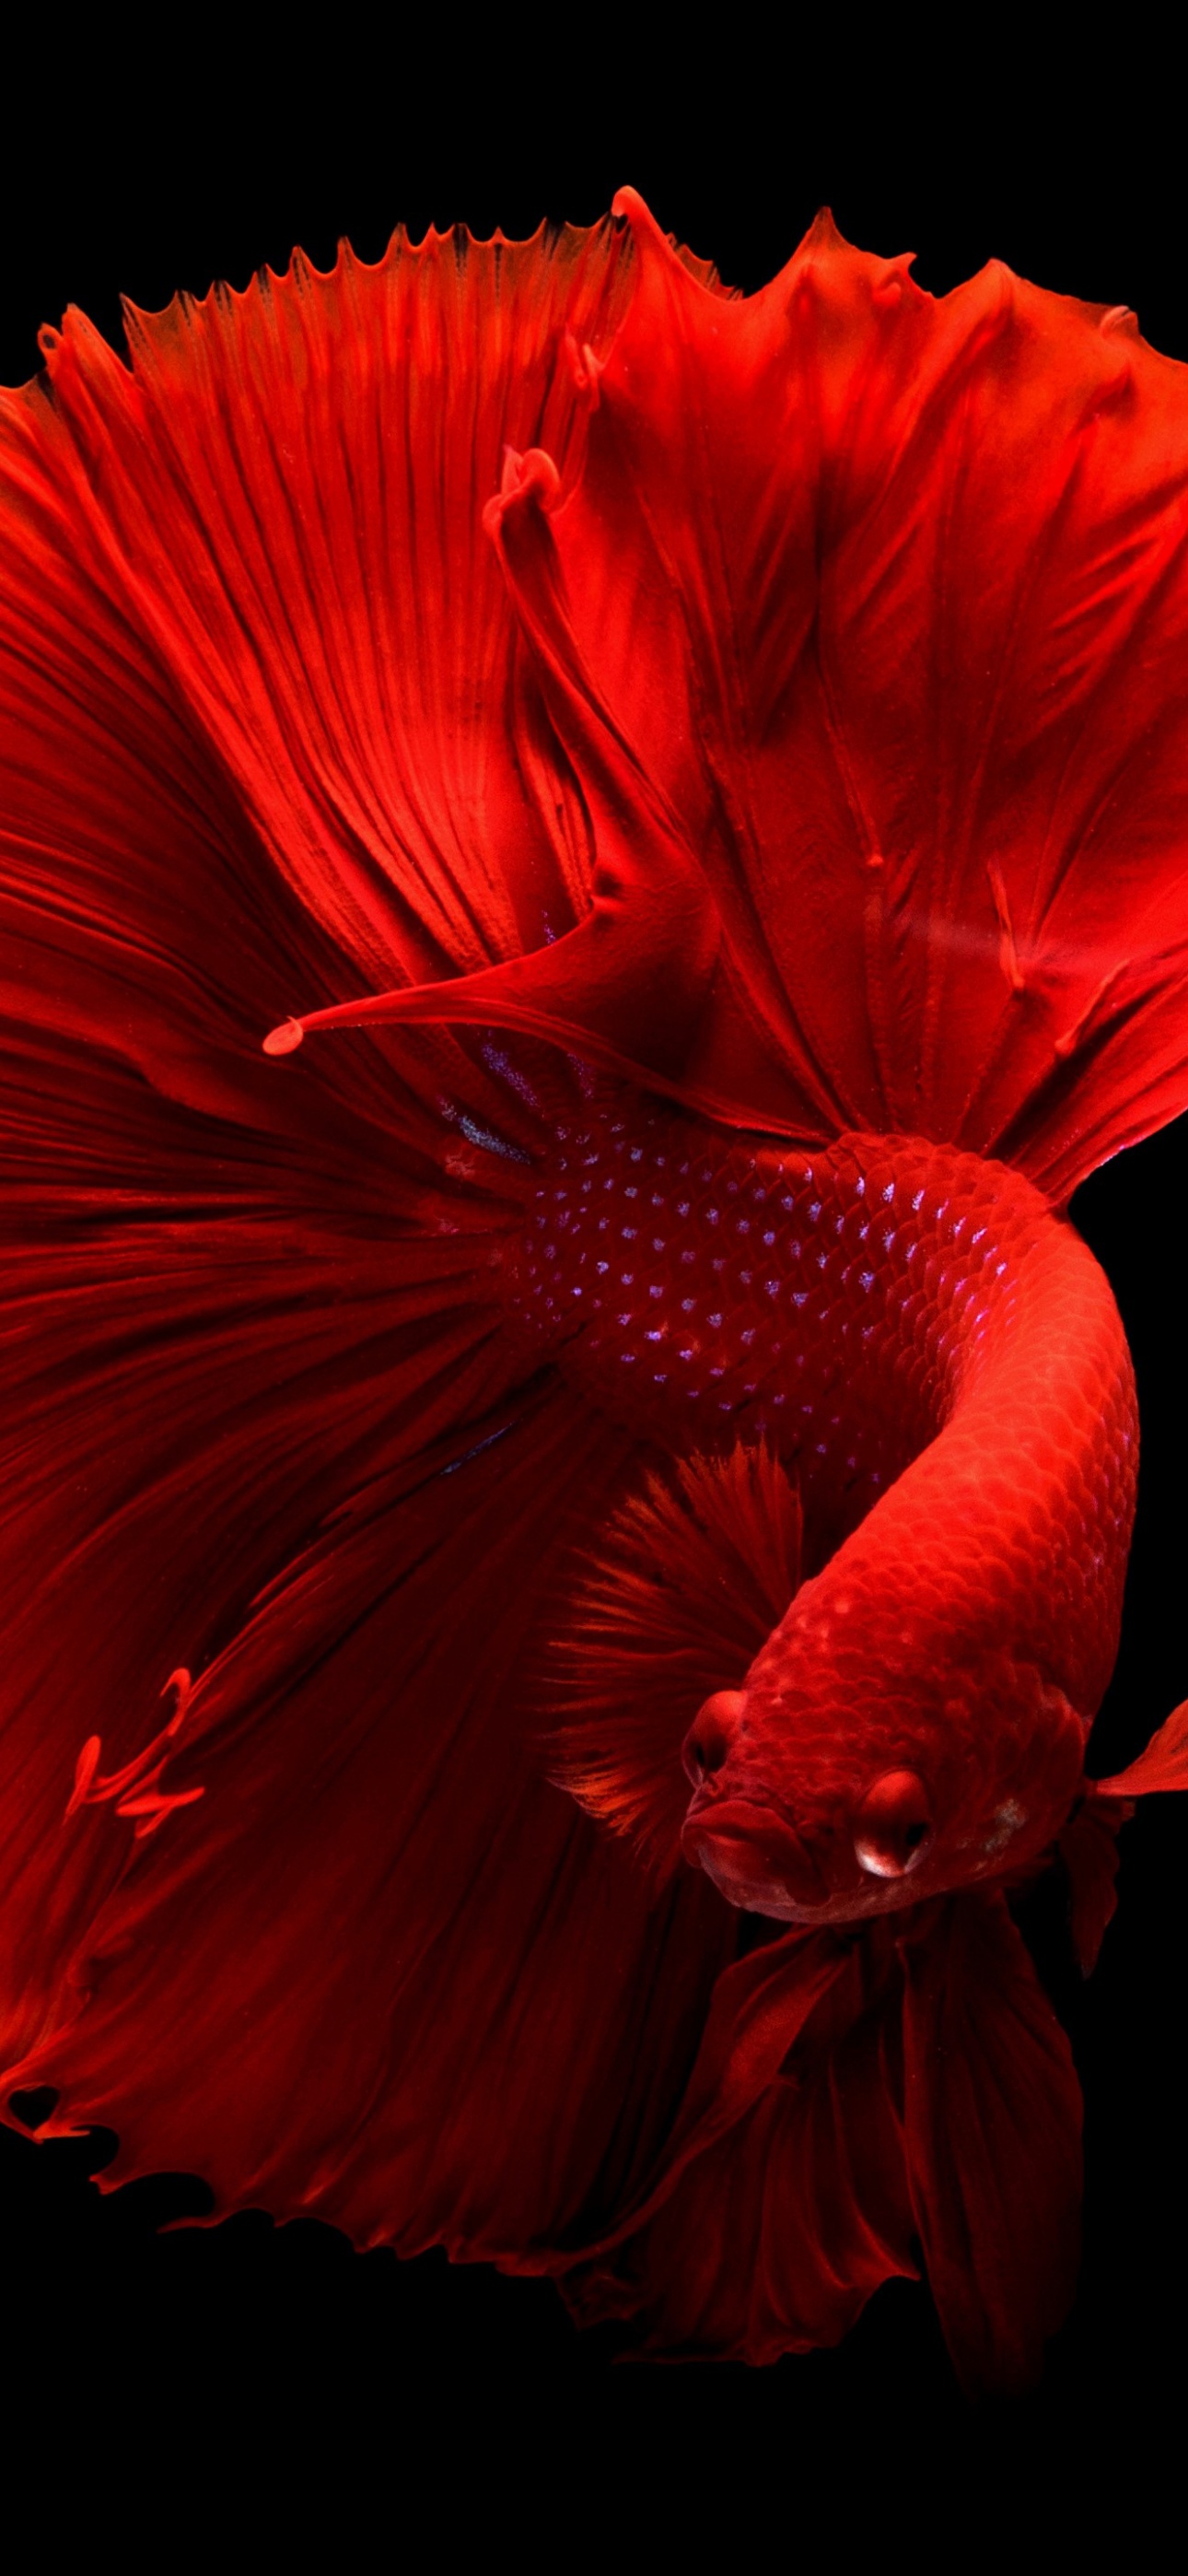 Fish Wallpaper Images - Free Download on Freepik